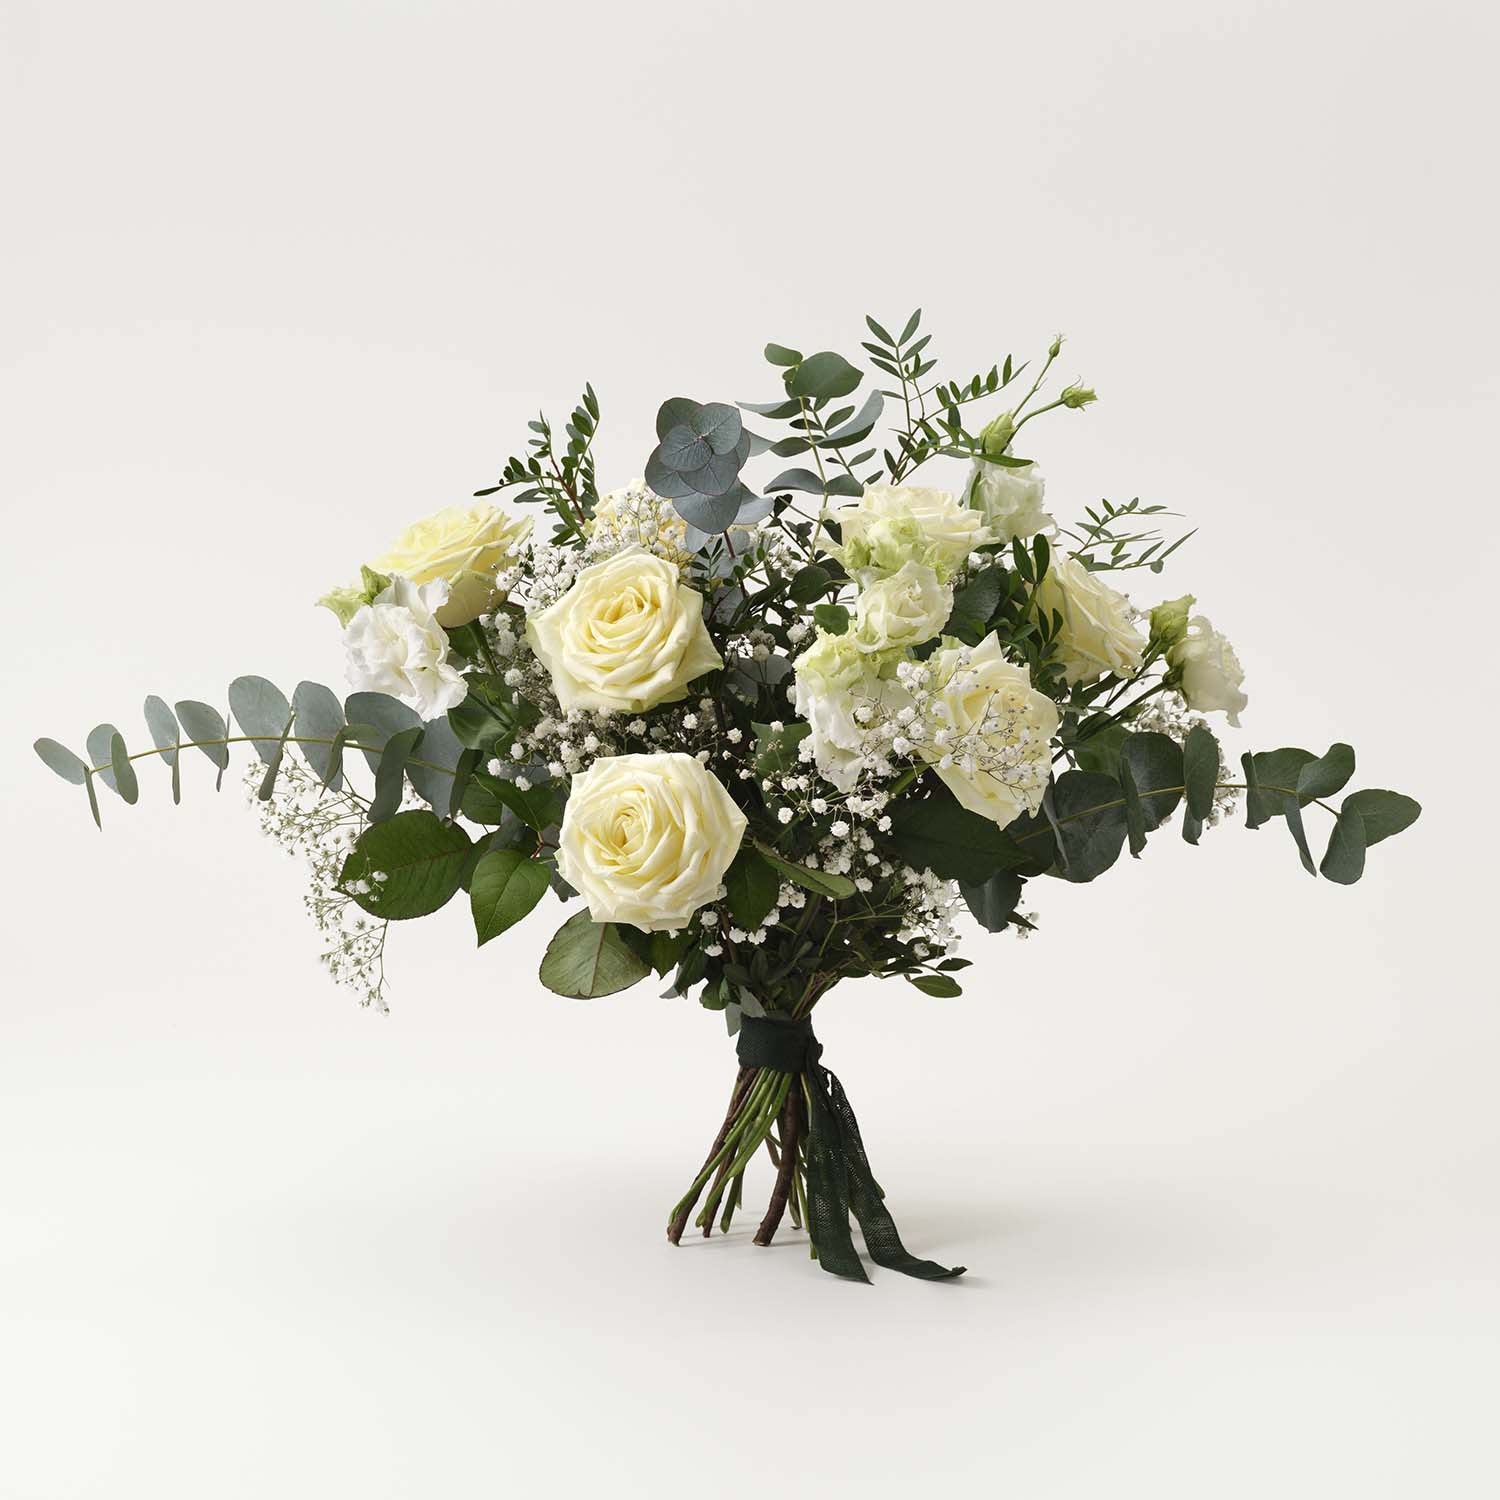 Funeral Sympathy Bouquet